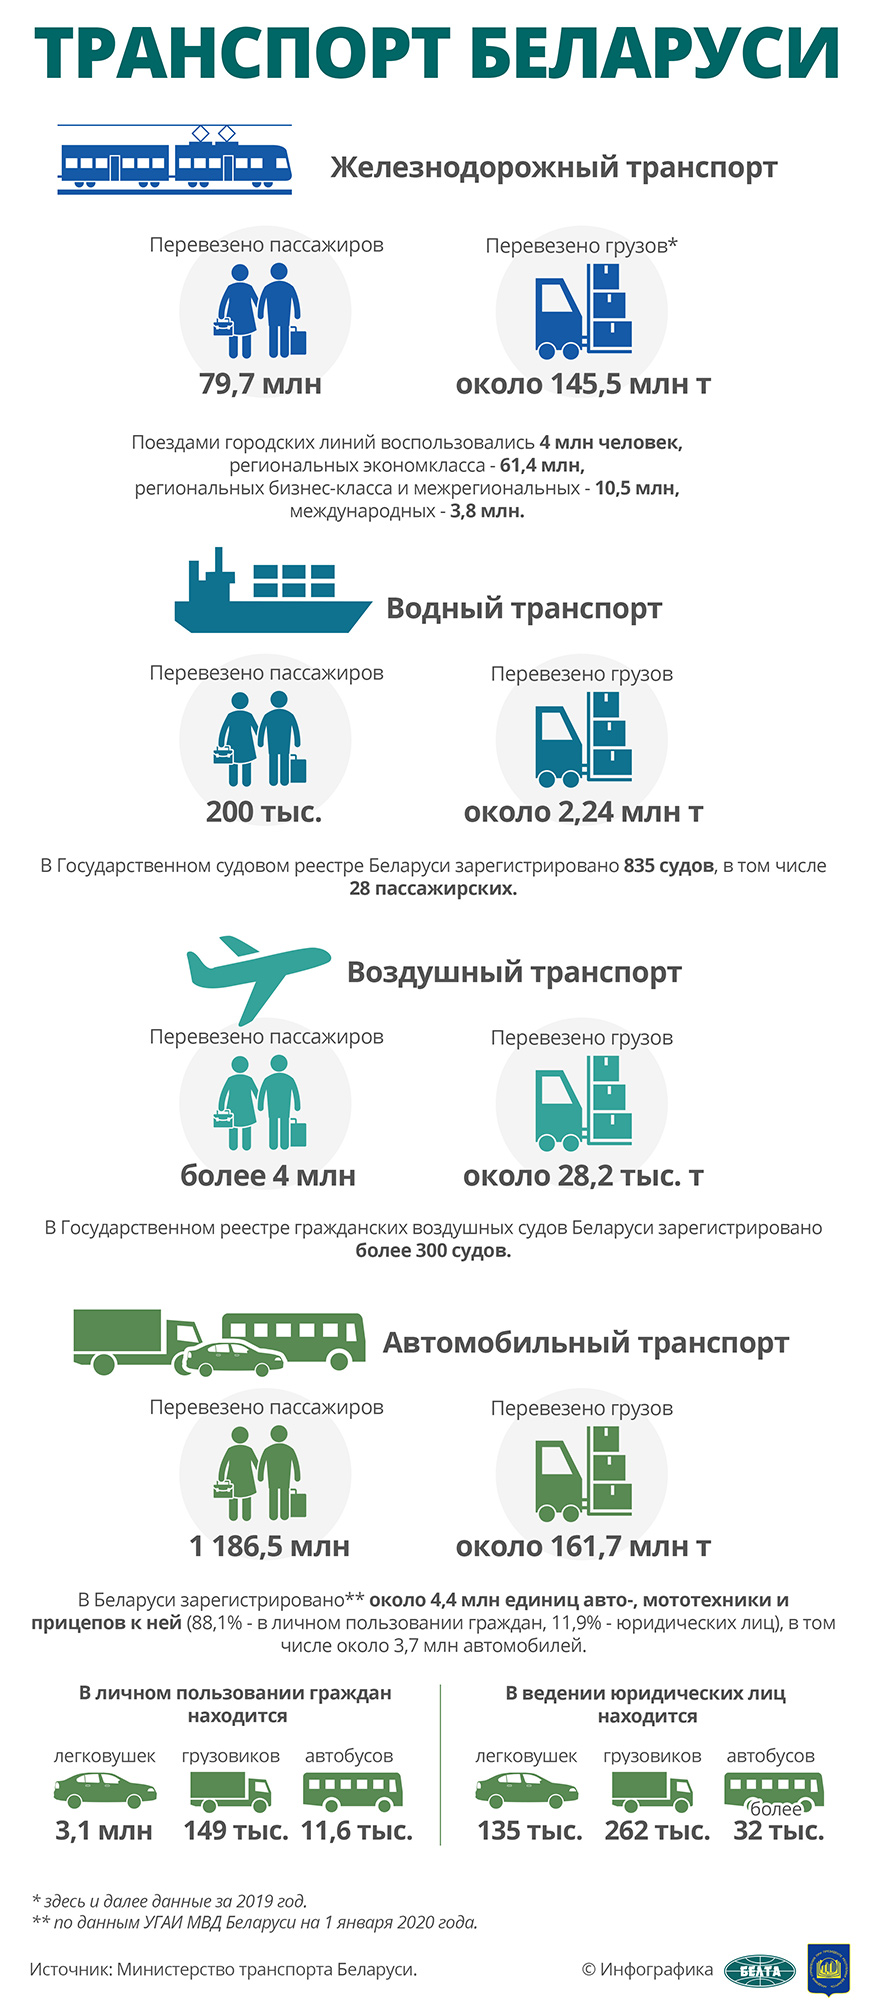 Транспорт Беларуси